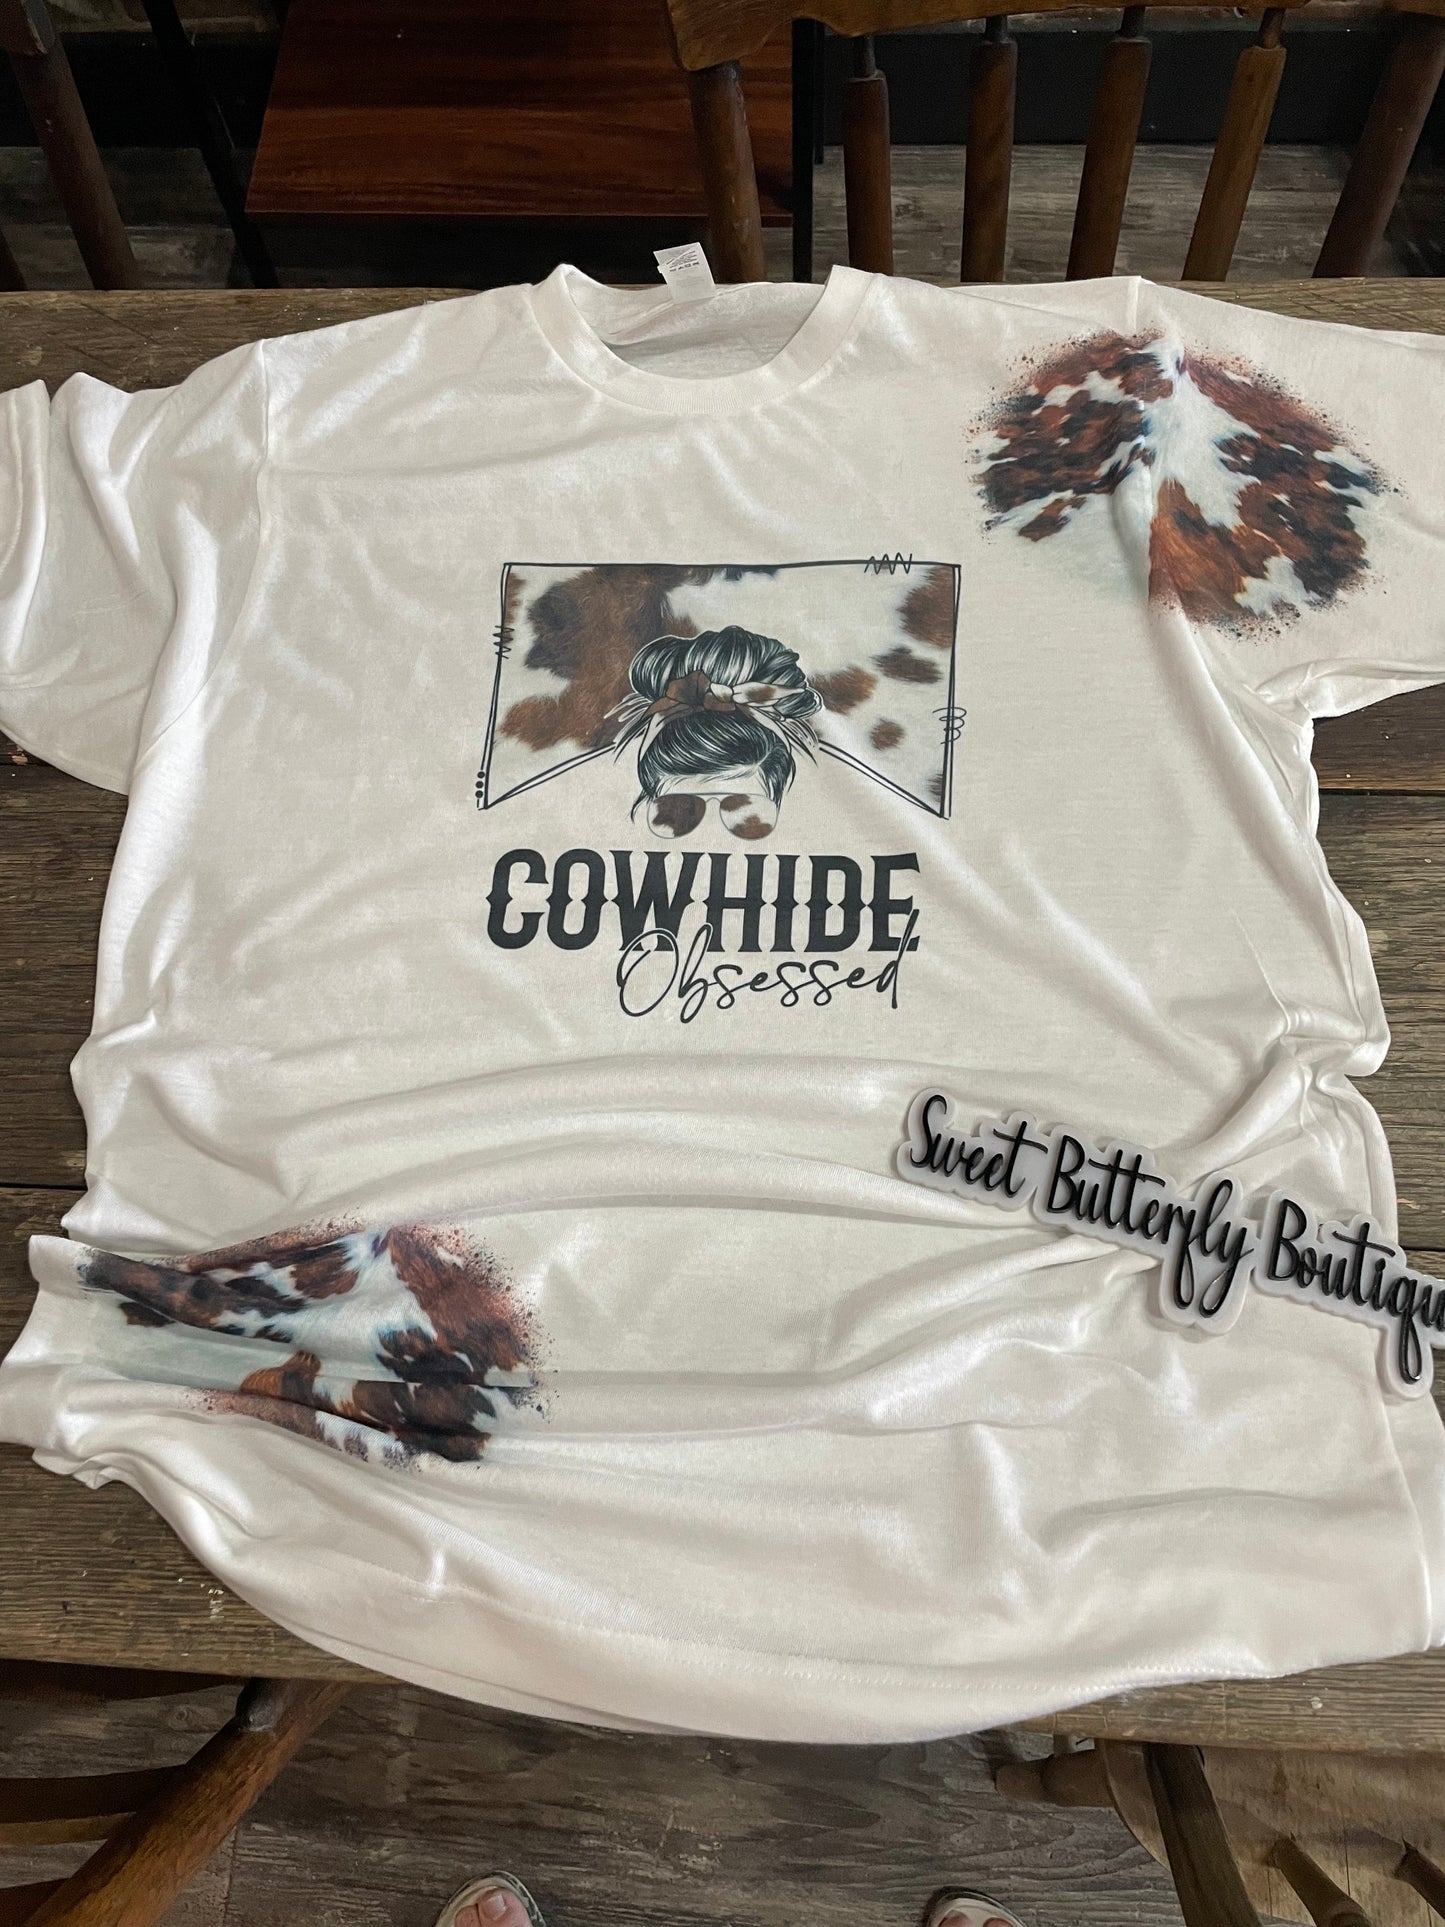 Cowhide Obsessed Teeshirt